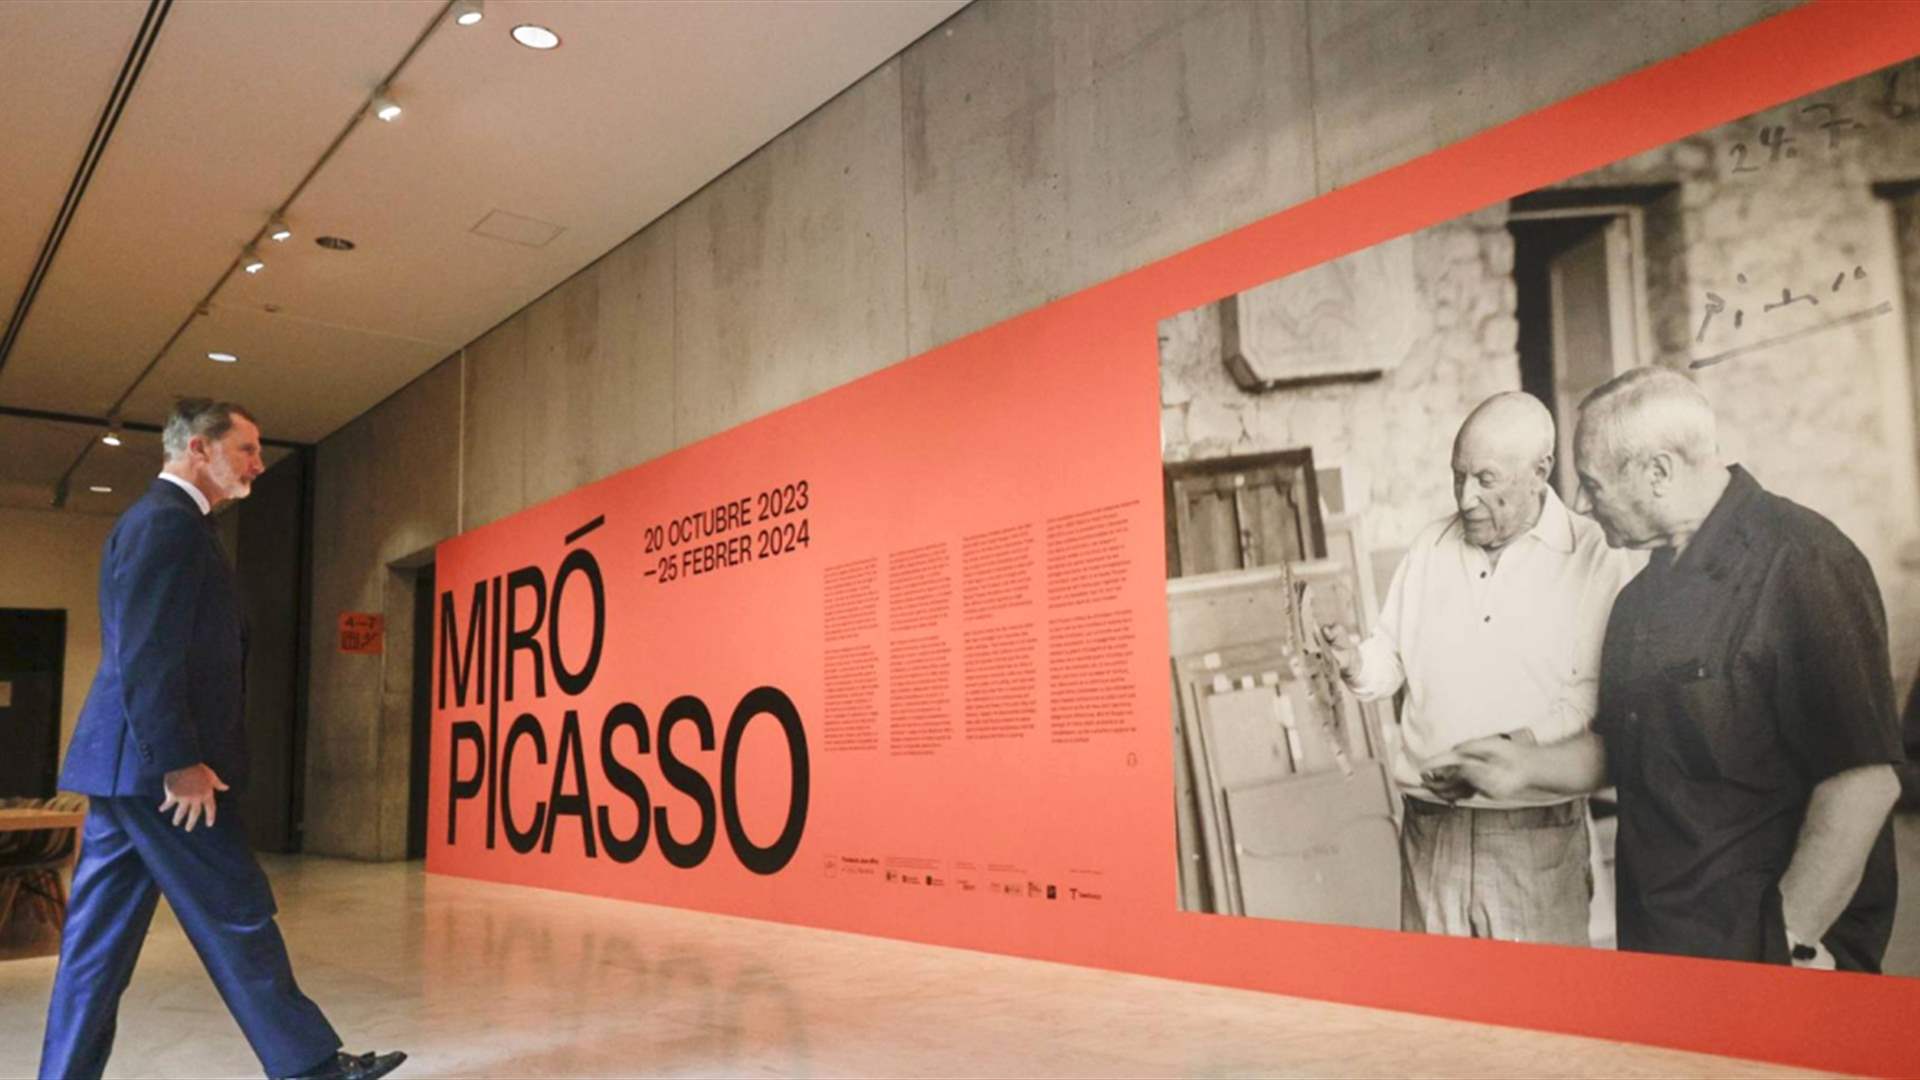 حوار بين بيكاسو وميرو في معرض مزدوج ببرشلونة